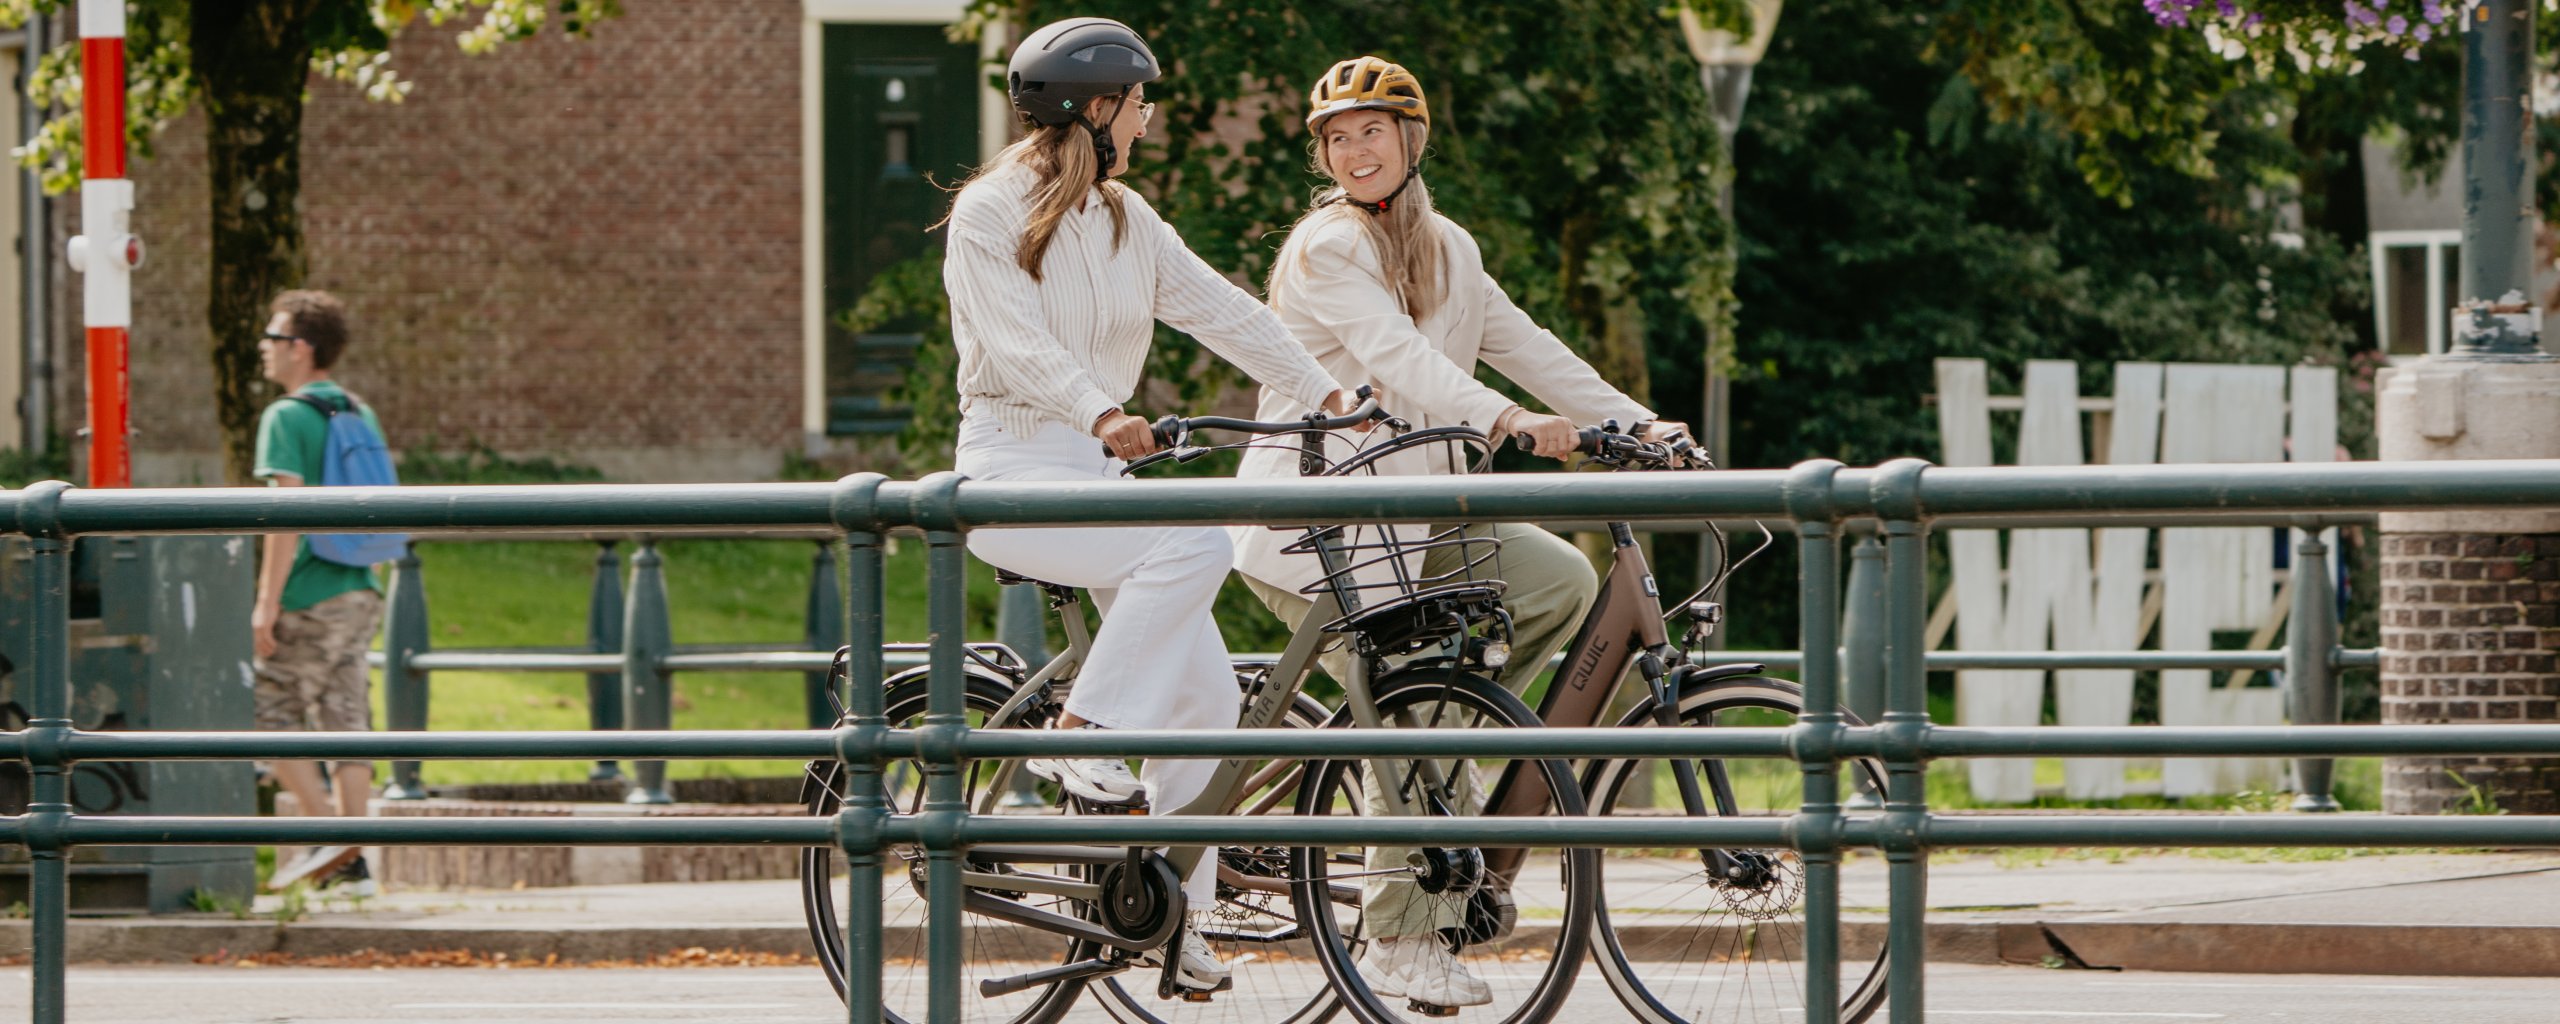 Twee vrouwen met een fietshelm op, fietsen samen over een brug